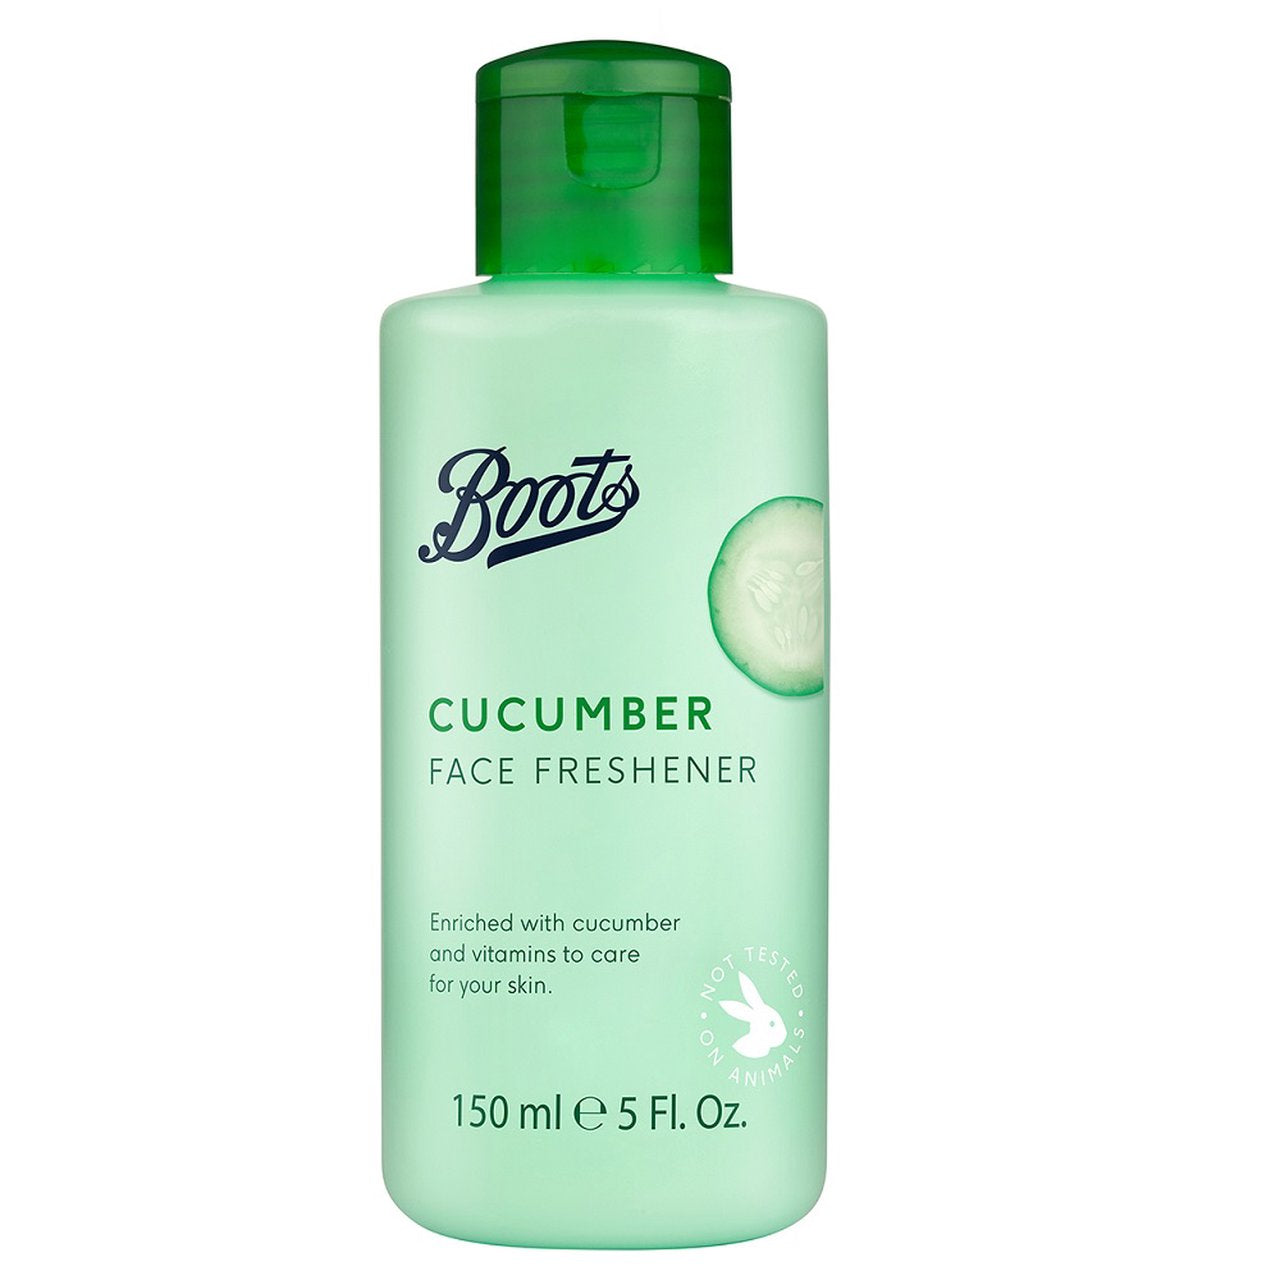 Boots Cucumber Face Freshener 150 ml., Освежающий тоник с экстрактом огурца для очищения кожи 150 мл.